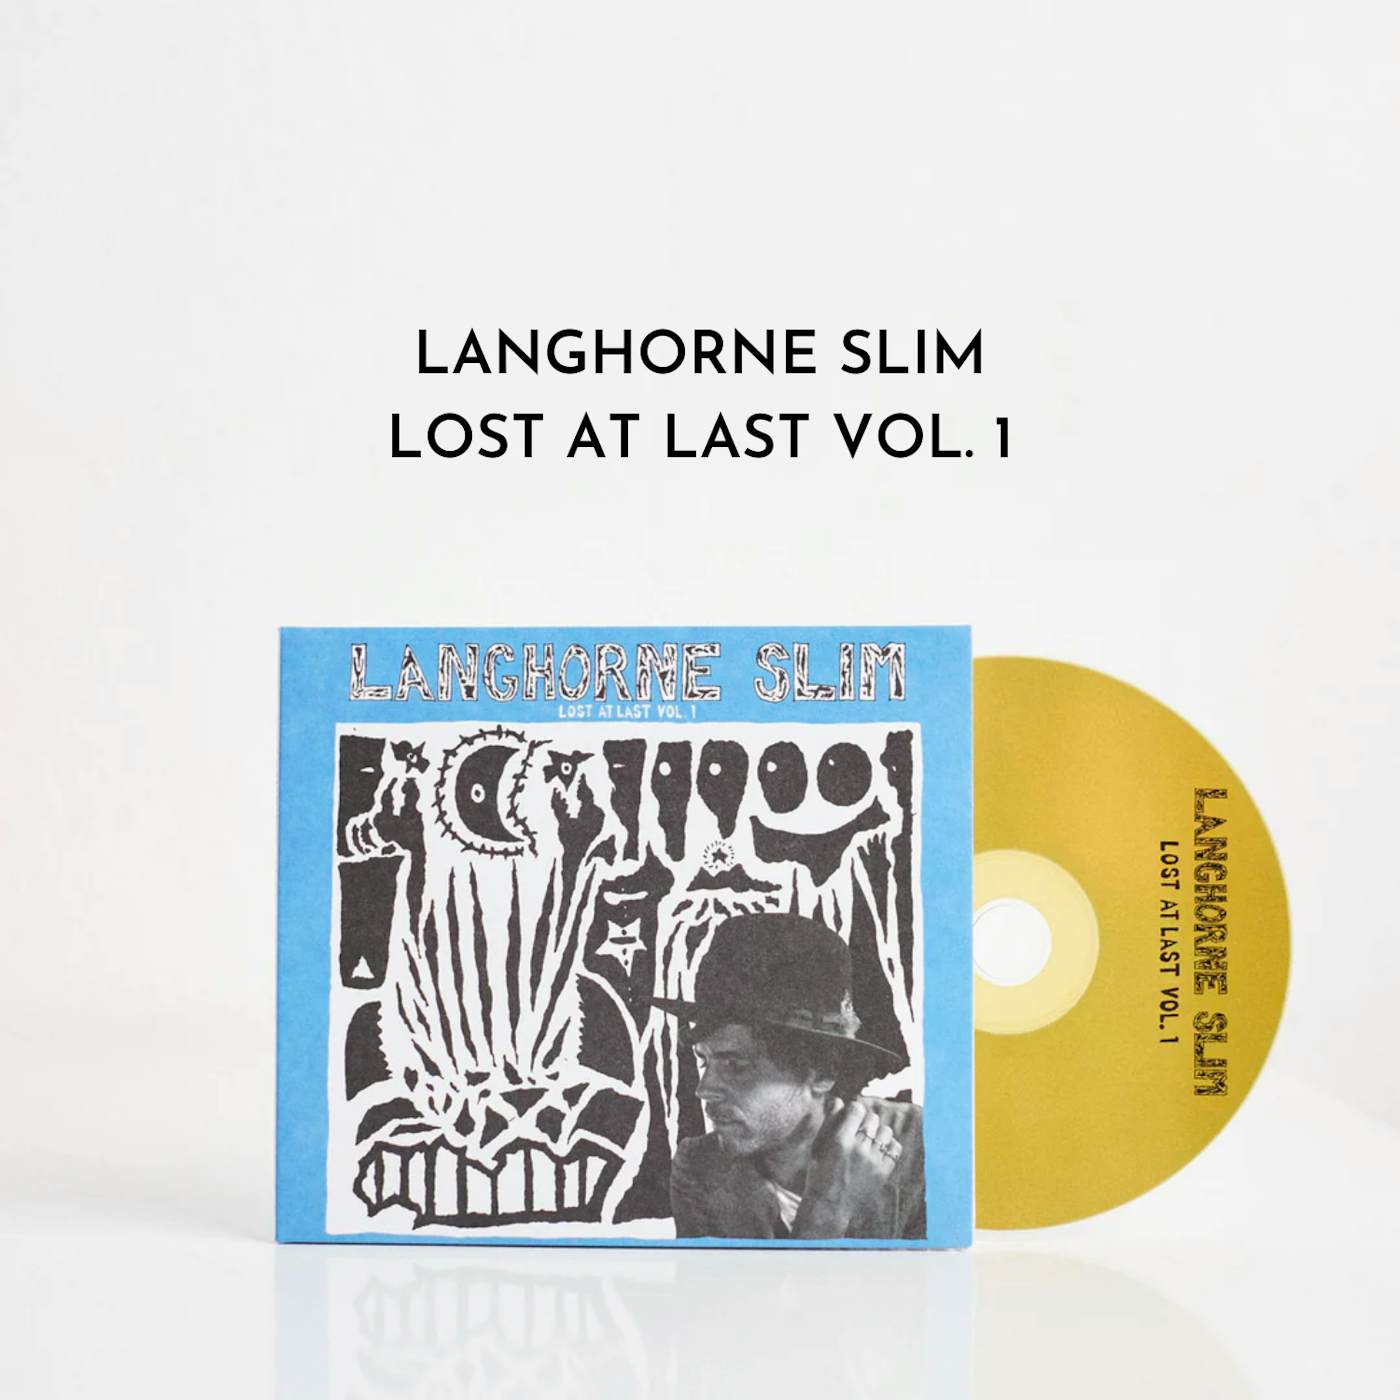 Langhorne Slim Lost At Last Vol. 1 (CD)